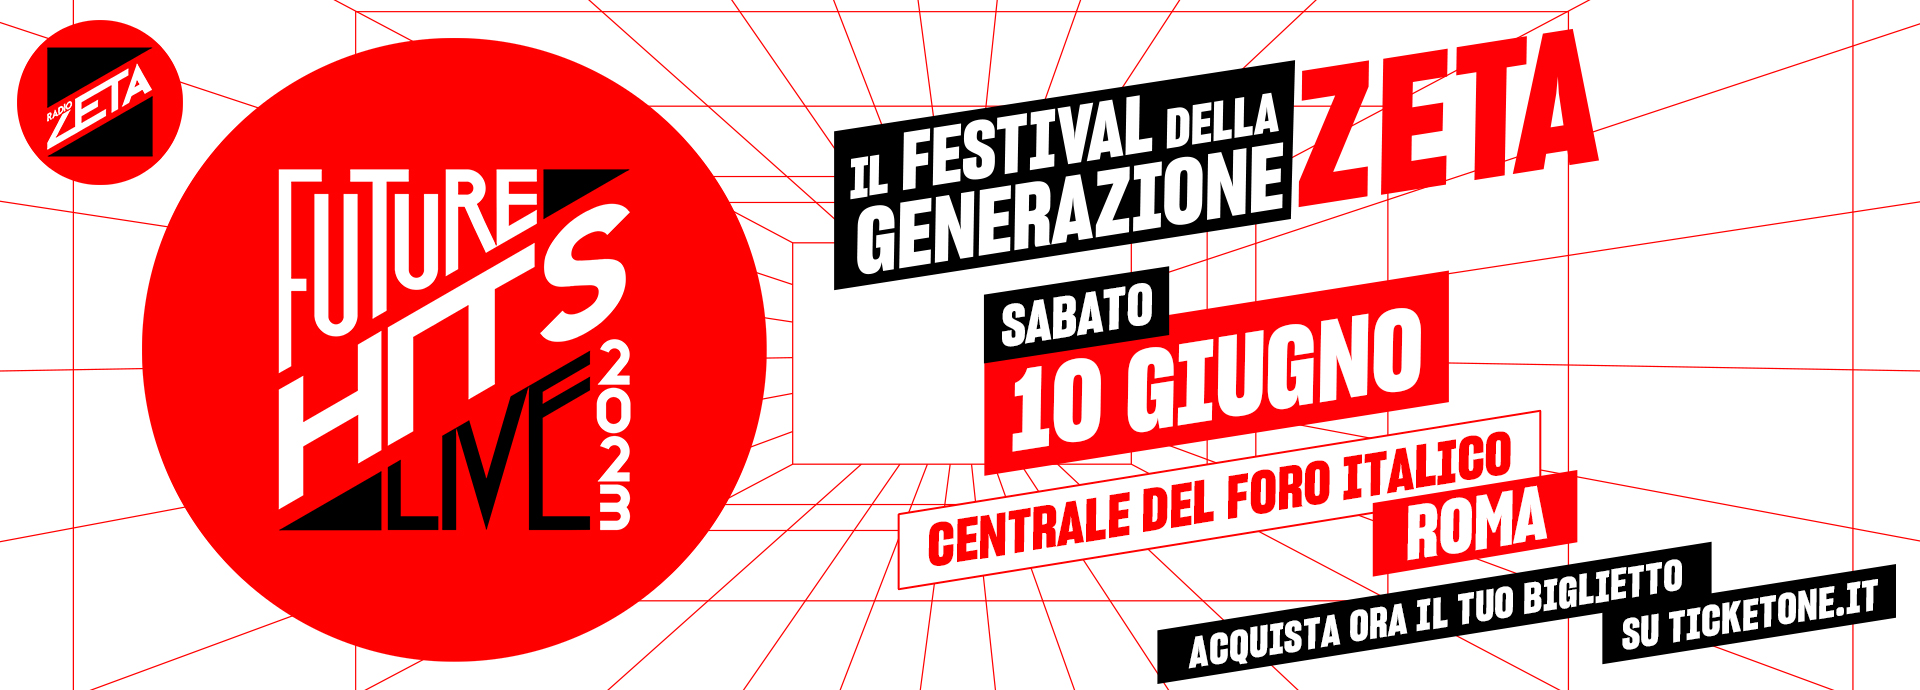 Radio Zeta Future Hits Live - Il Festival Della Generazione Zeta!